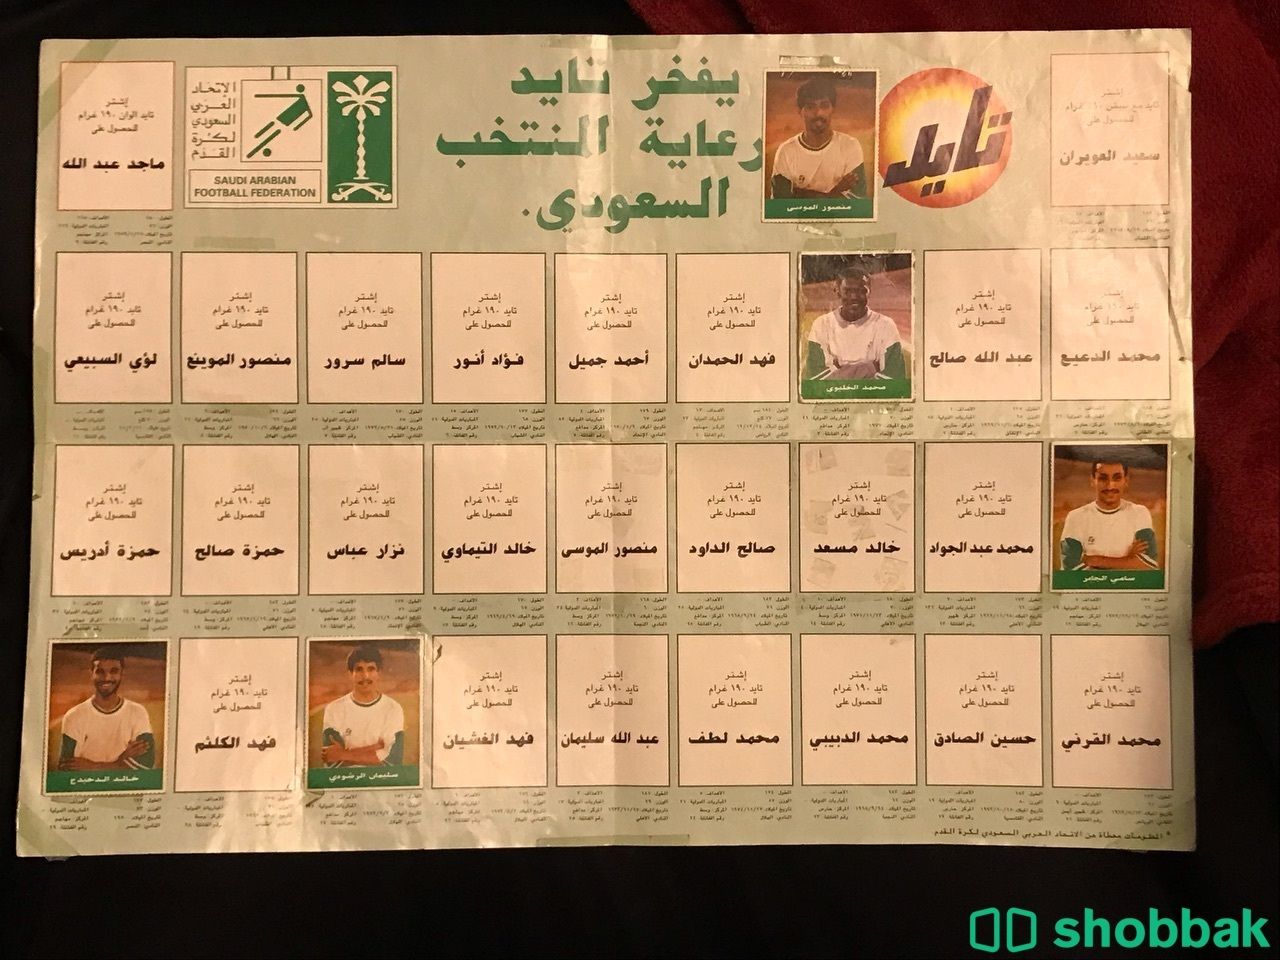 لوحة دعم المنتخب السعودي في كأس العالم عام 94 Shobbak Saudi Arabia